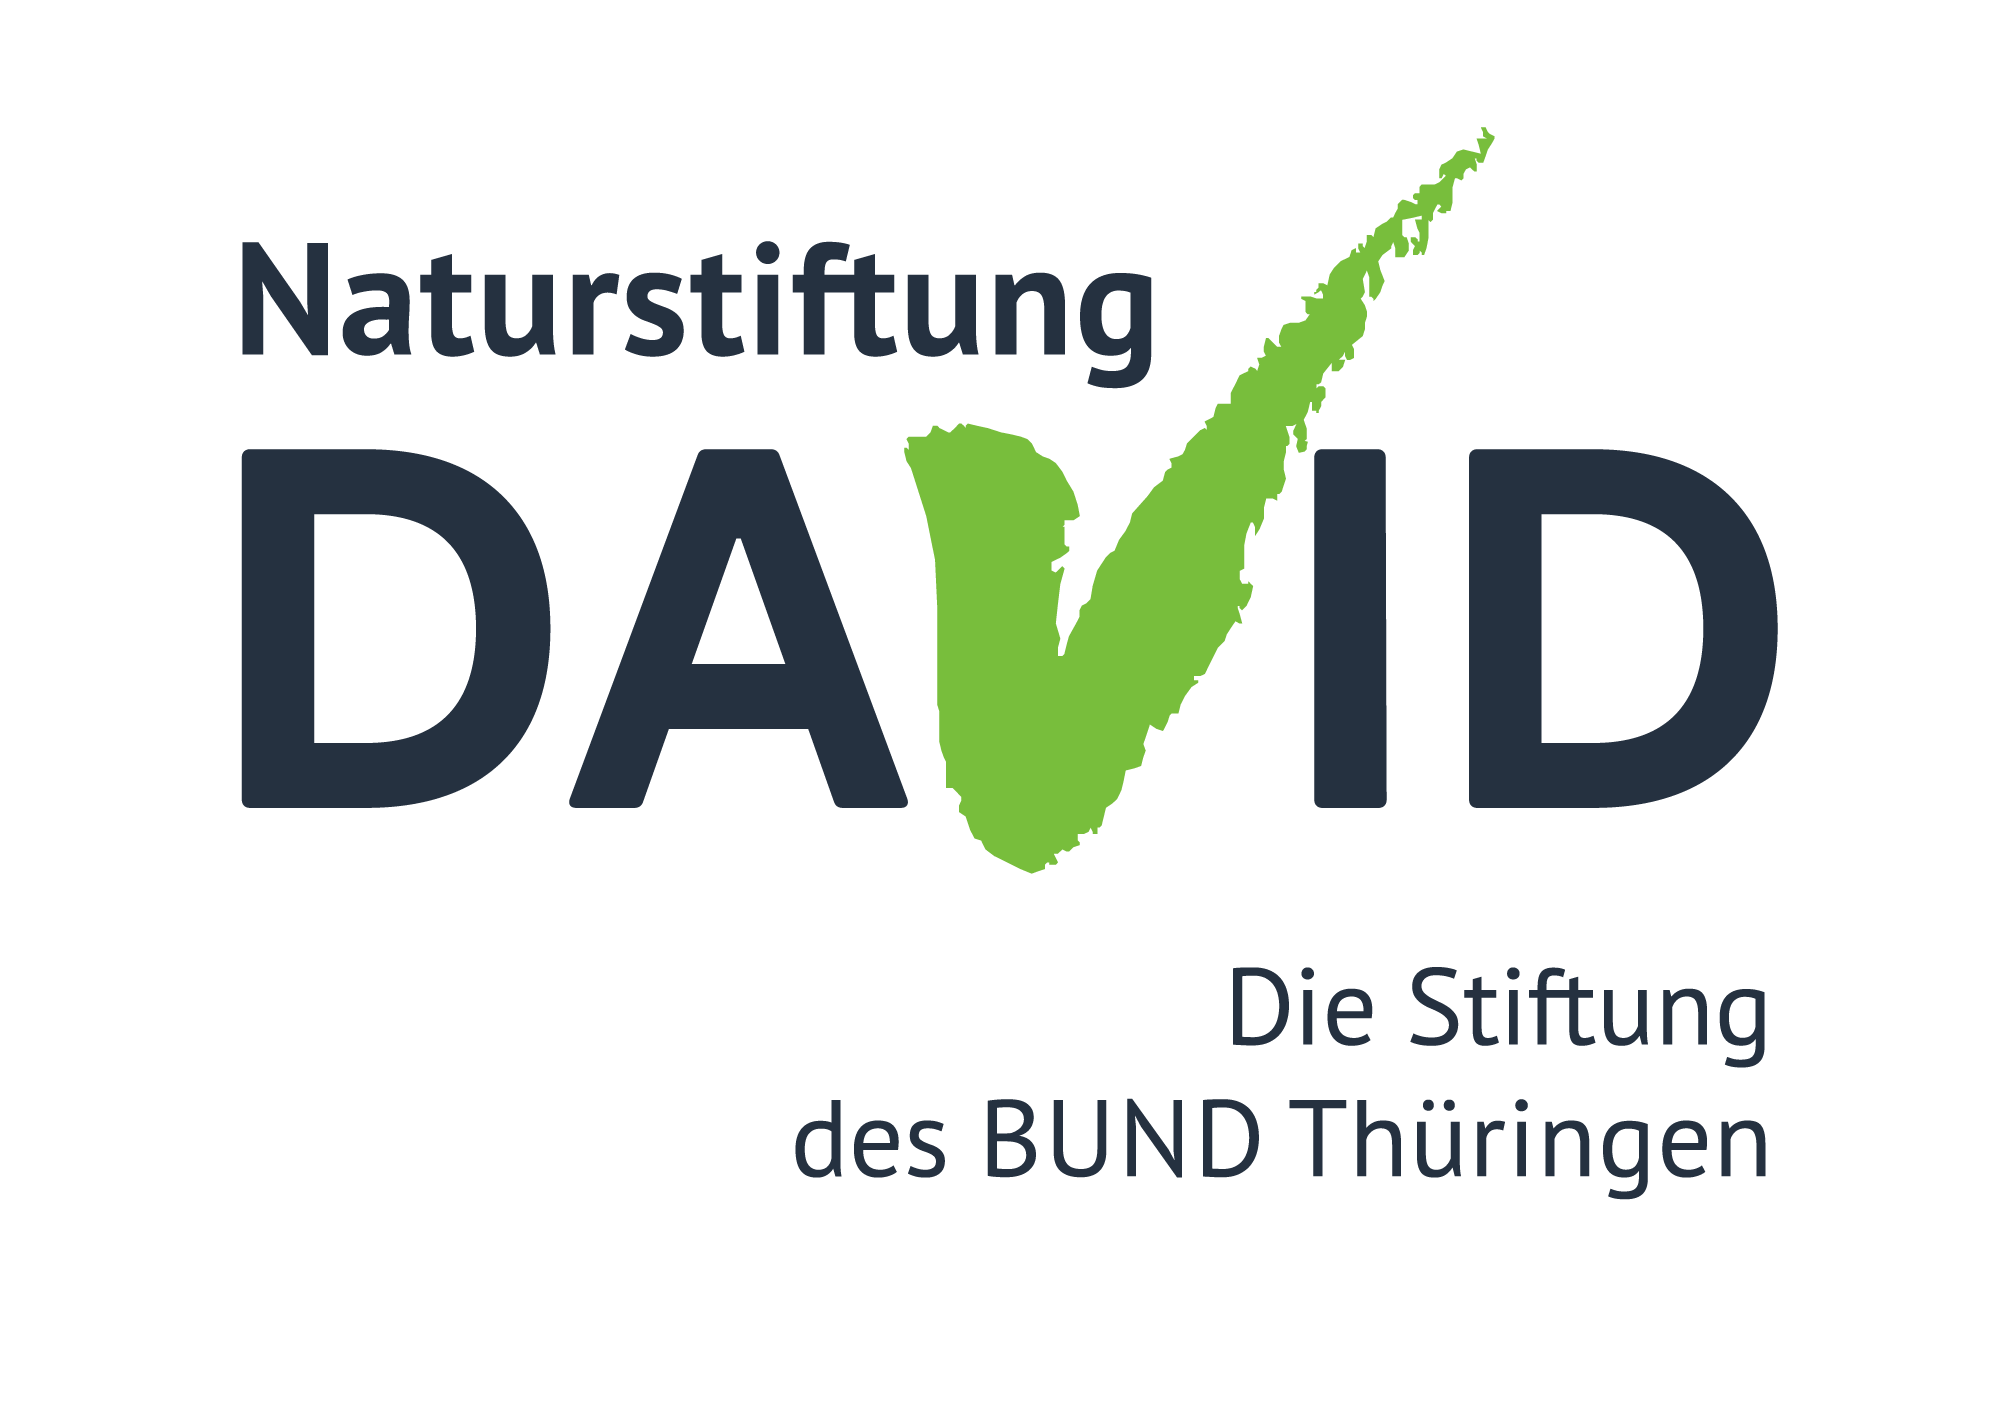 Auf der Abbildung ist das Logo der Naturstiftung David zu sehen.